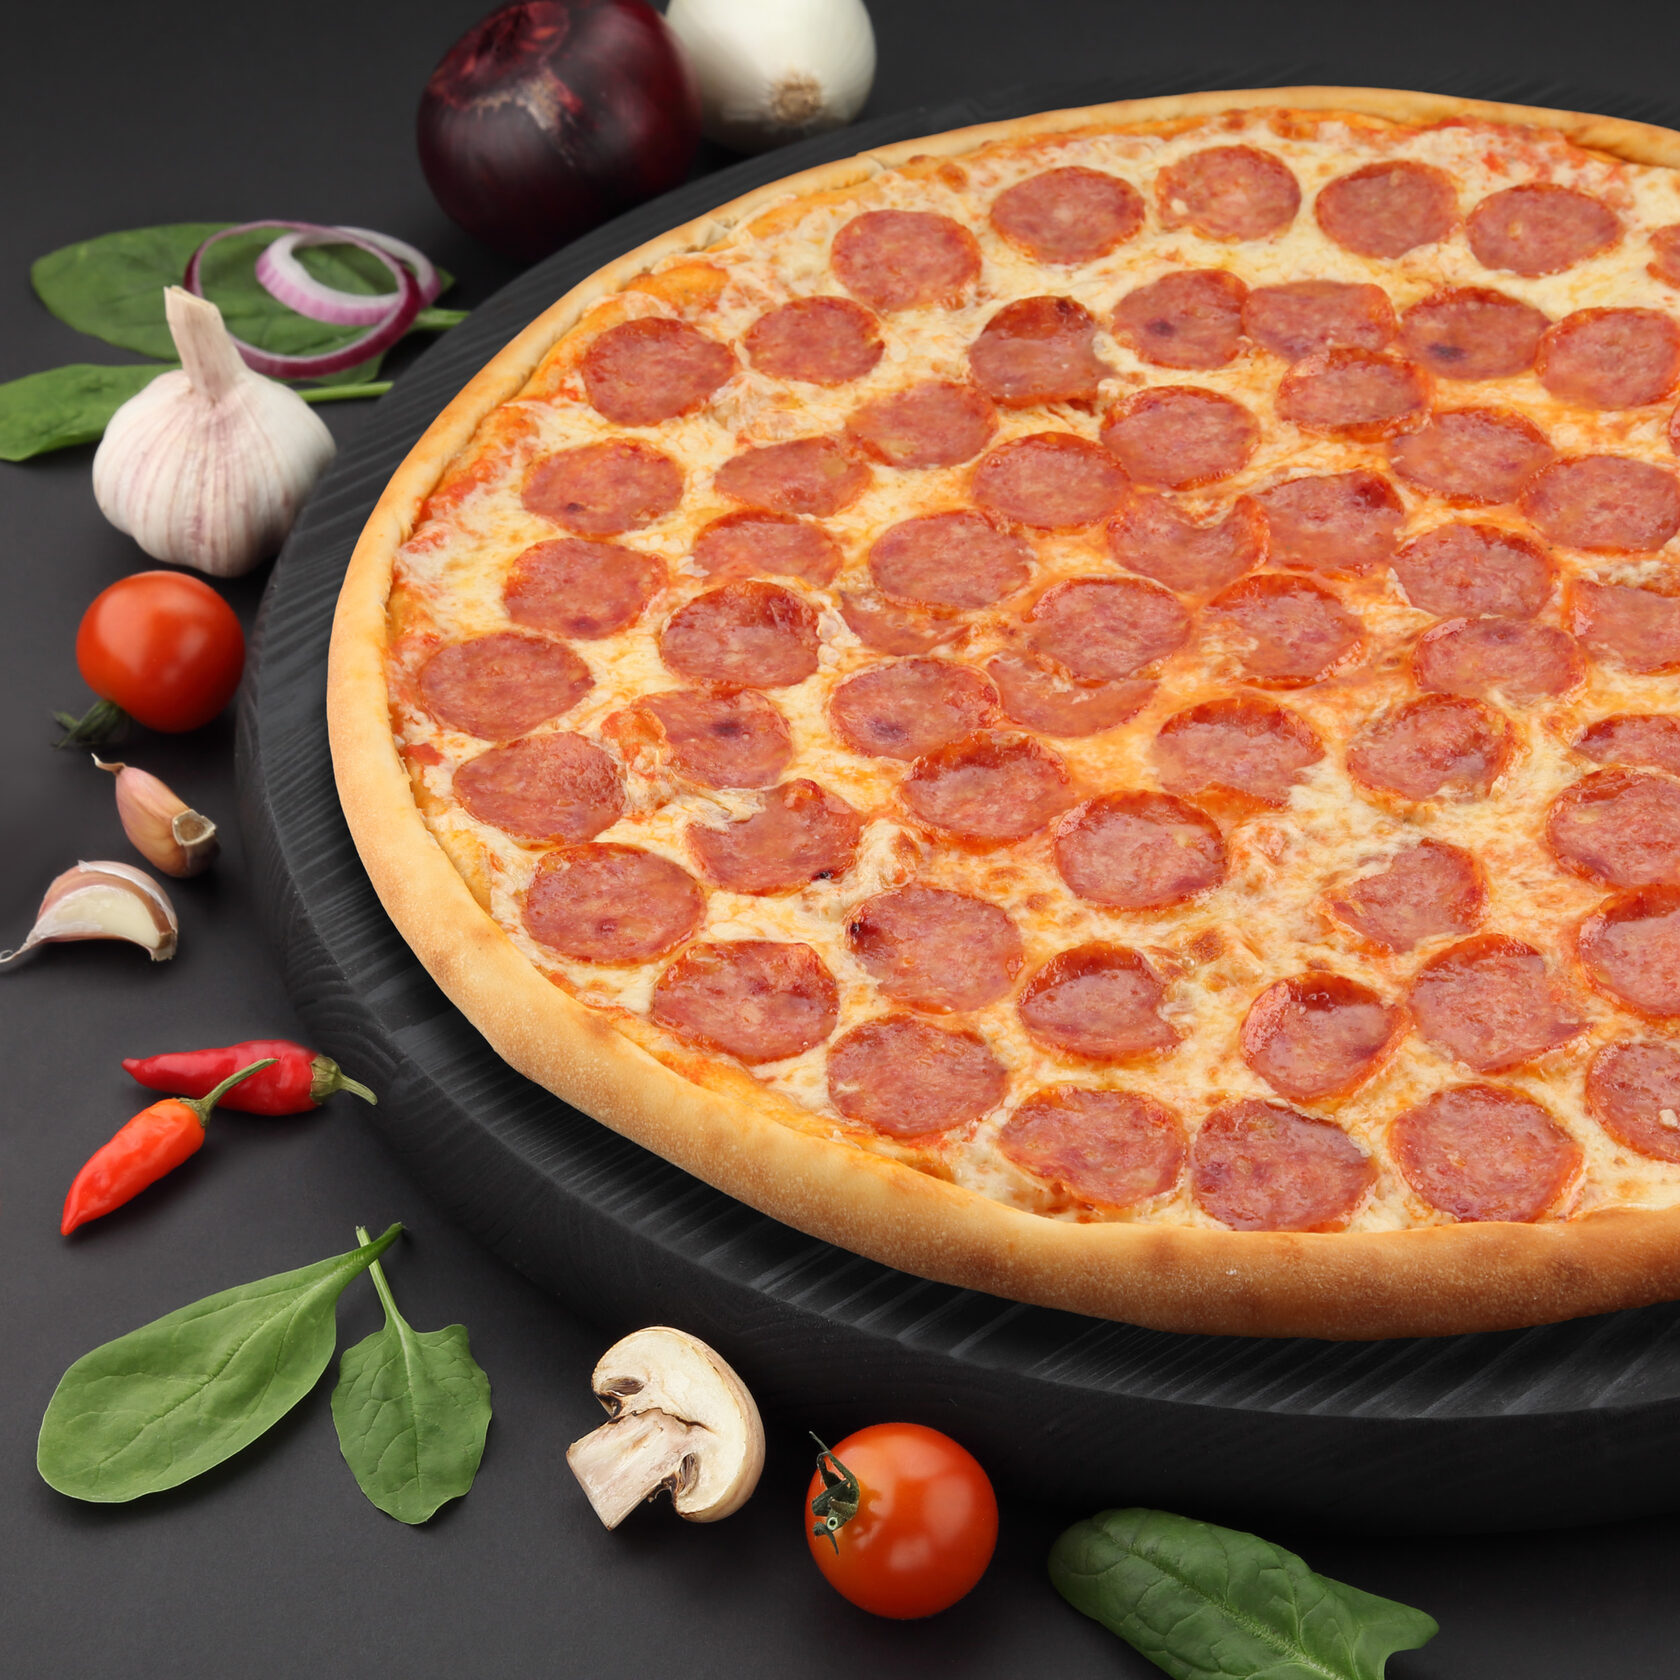 состав пицца пепперони классическая фото 99